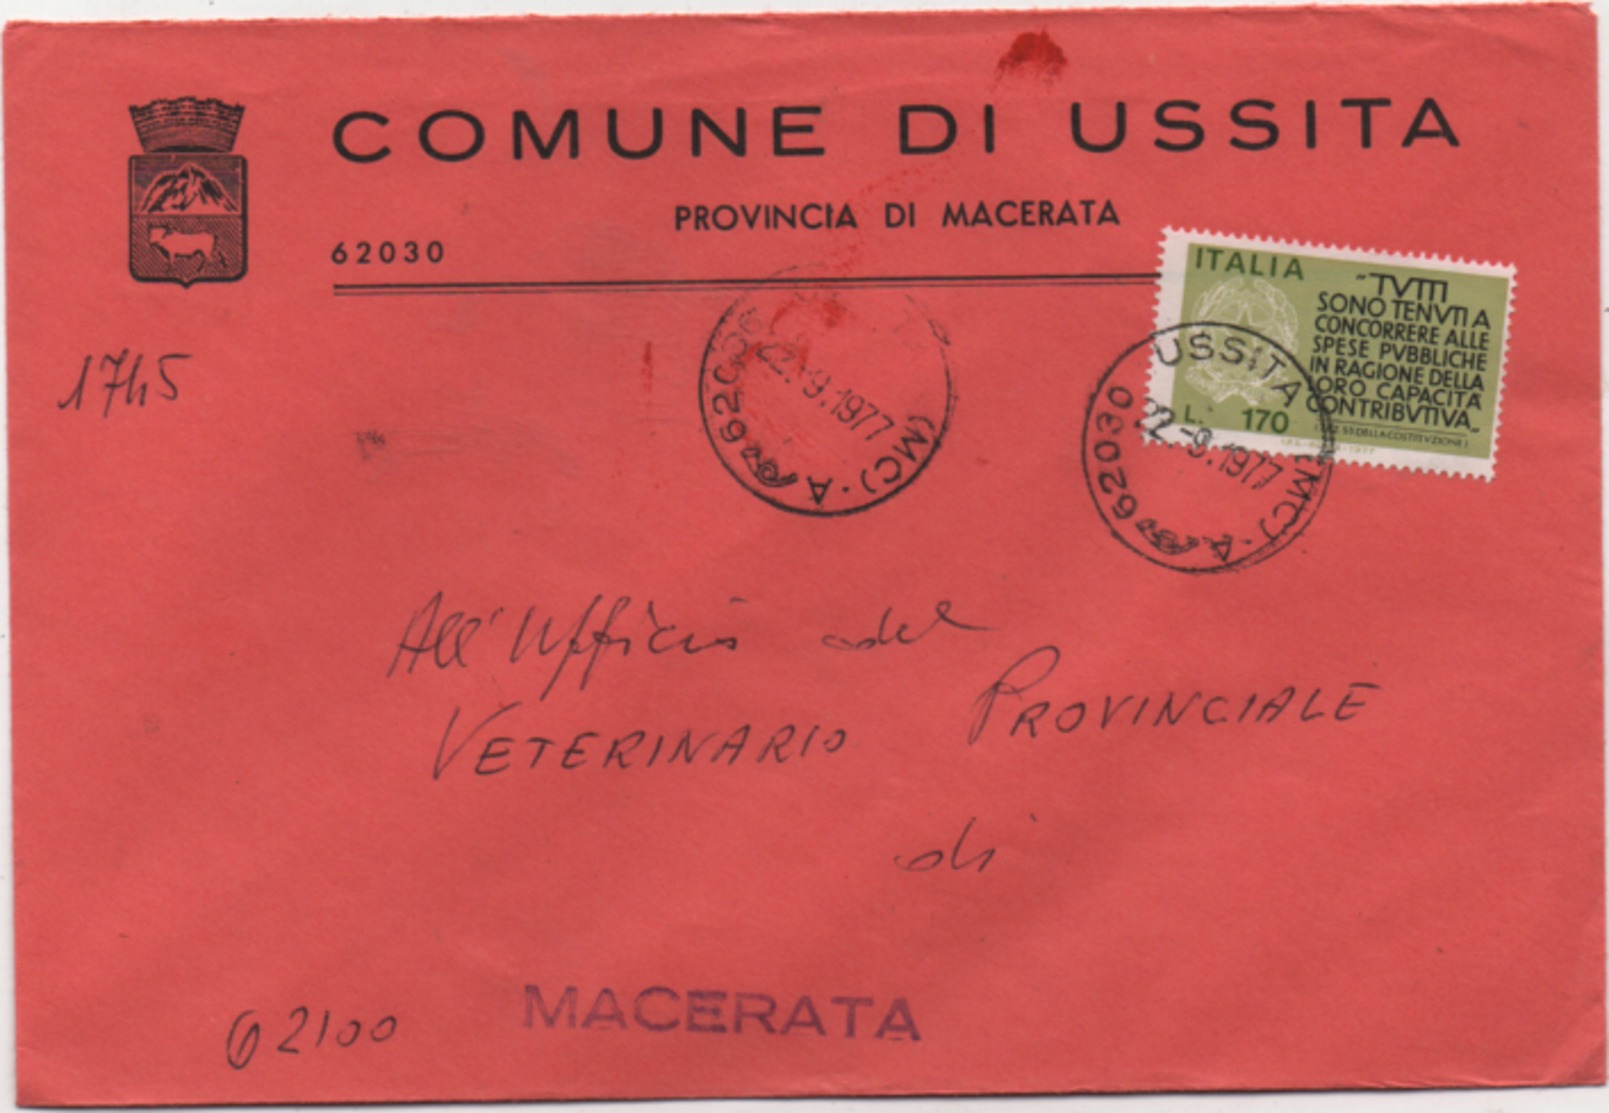 Tematica Comuni D'Italia: Capacità Contributiva £. 170 Su Busta Comune Di Ussita (Macerata) Del 22.09.1977 - 1971-80: Storia Postale